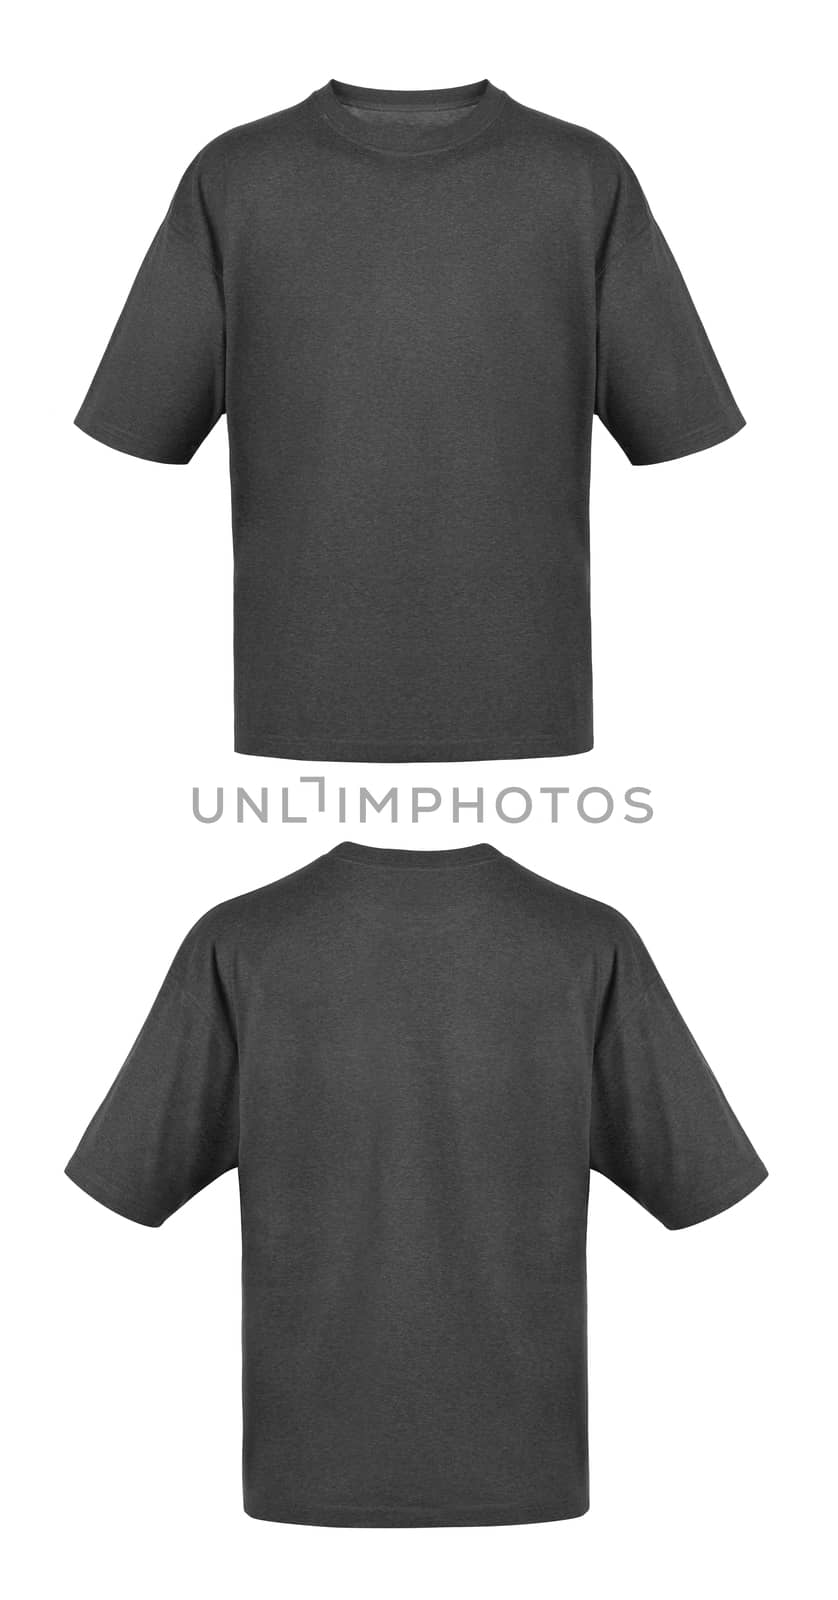 Black T-shirts isolated on white background